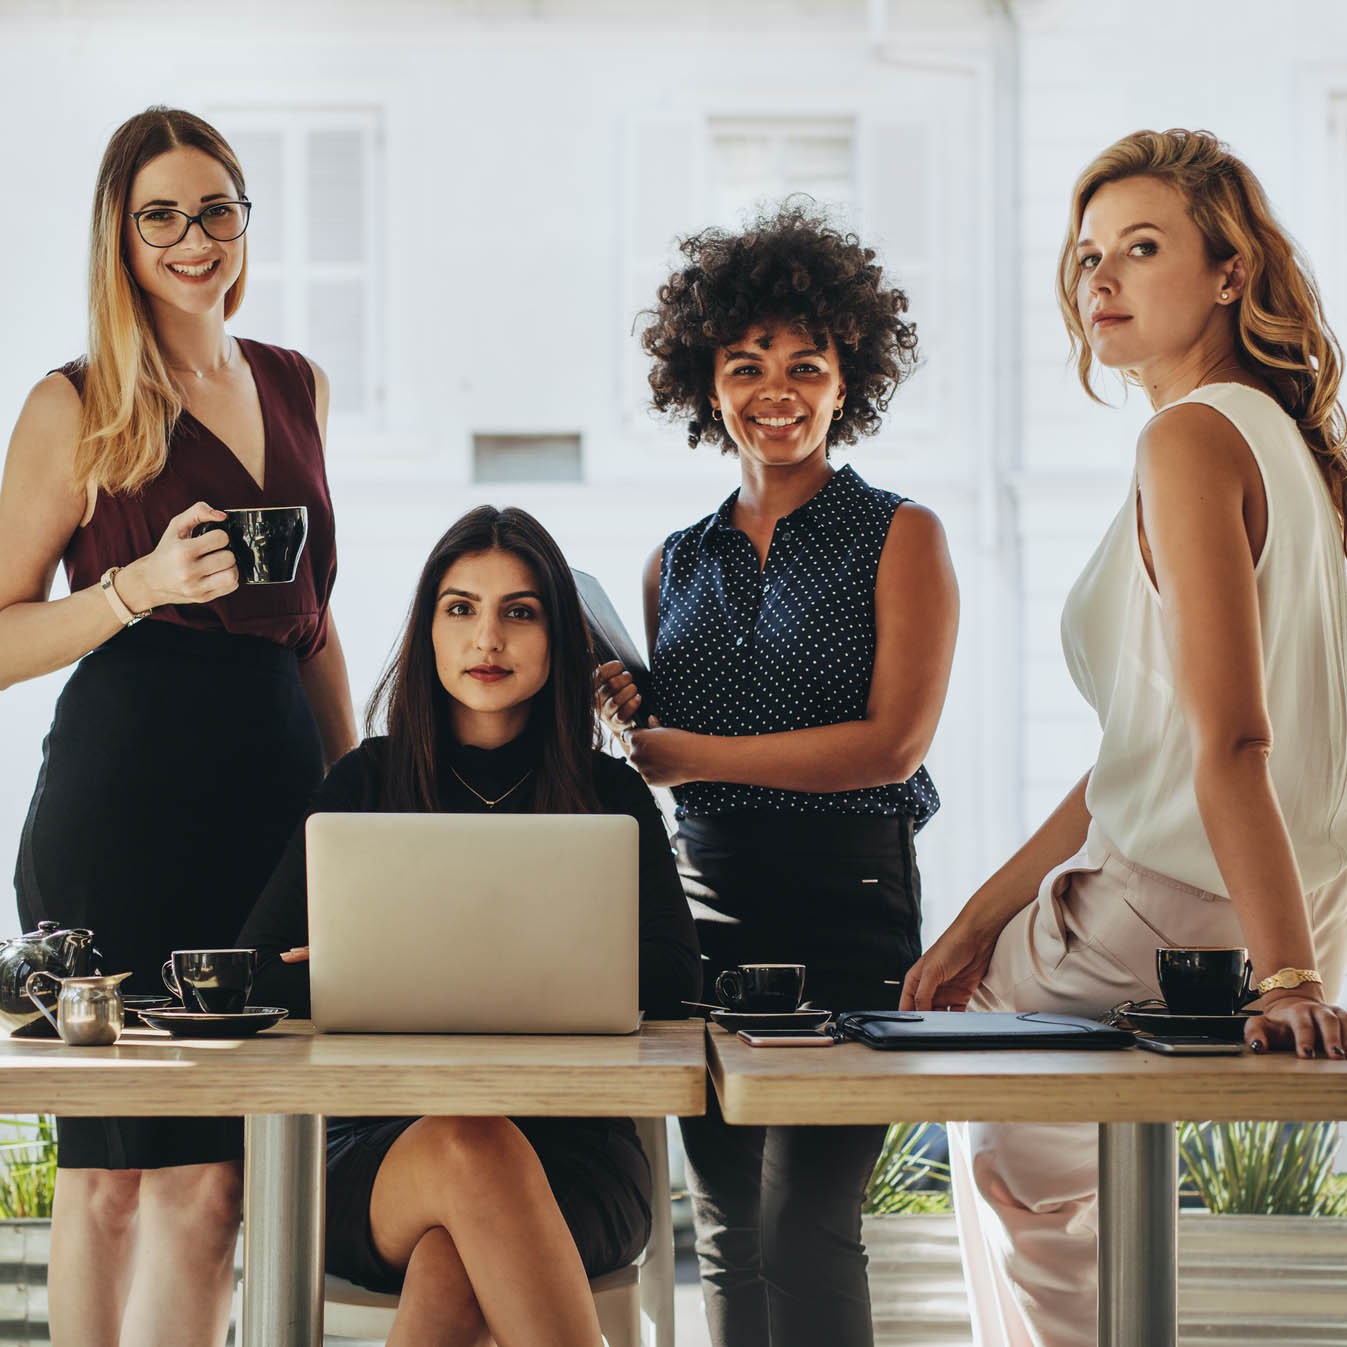 Sebrae Roraima promove programação voltada para empreendedorismo feminino